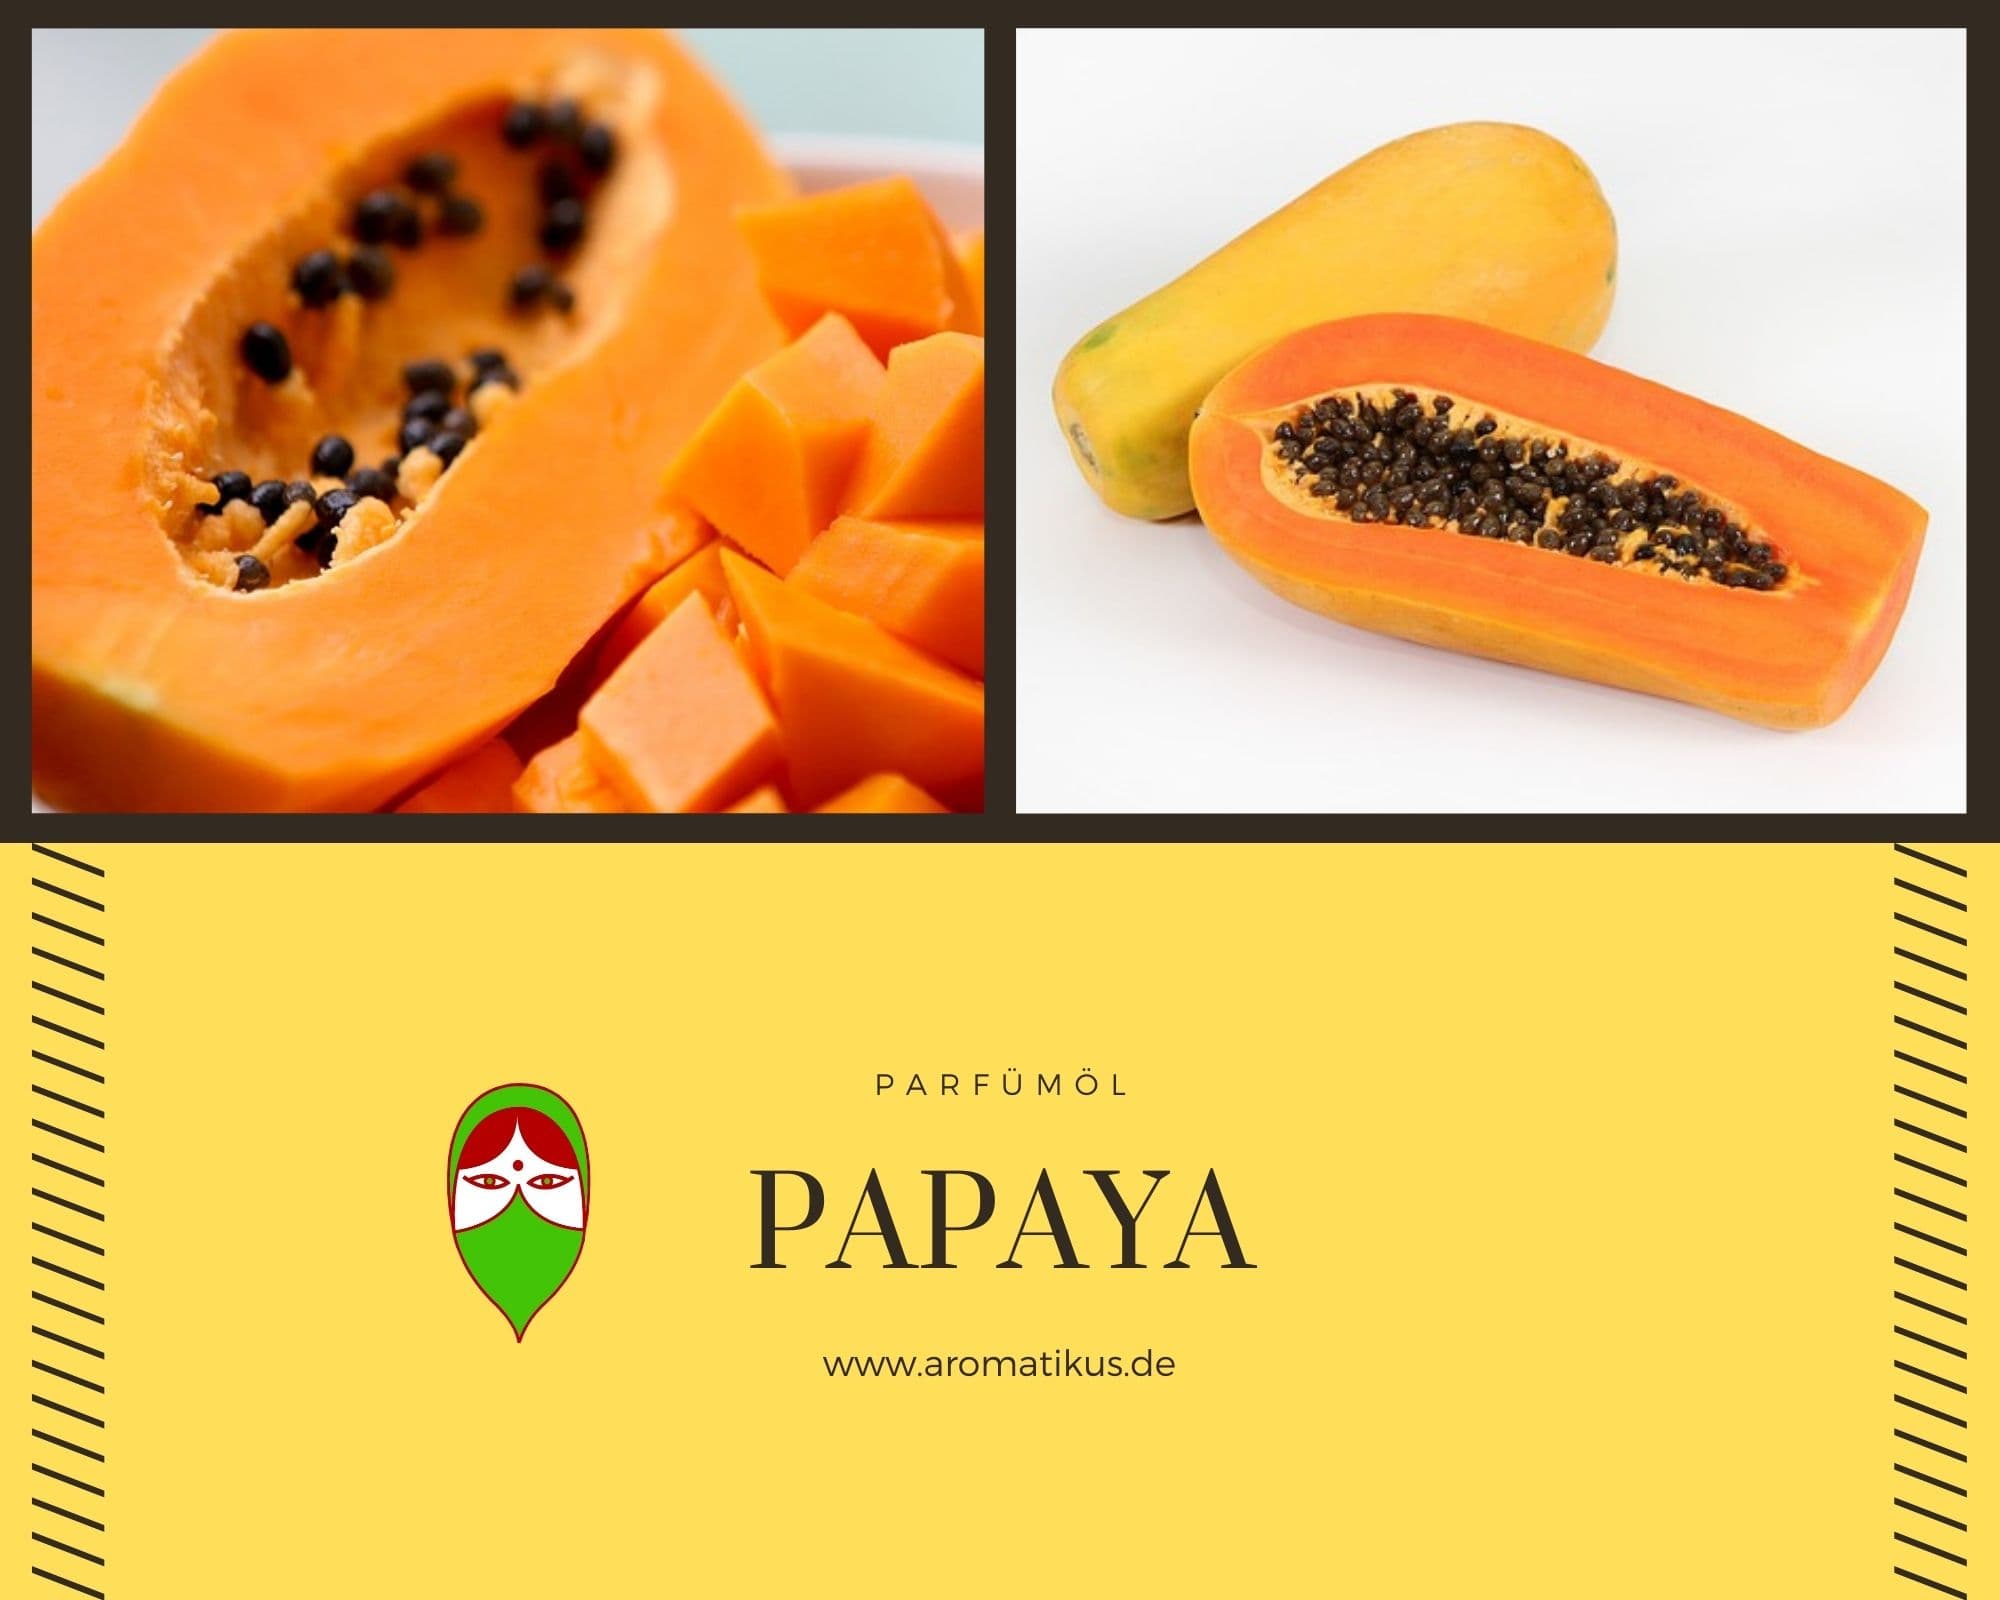 Ätherisches Duftöl Papaya als Parfümöl von Aromatikus